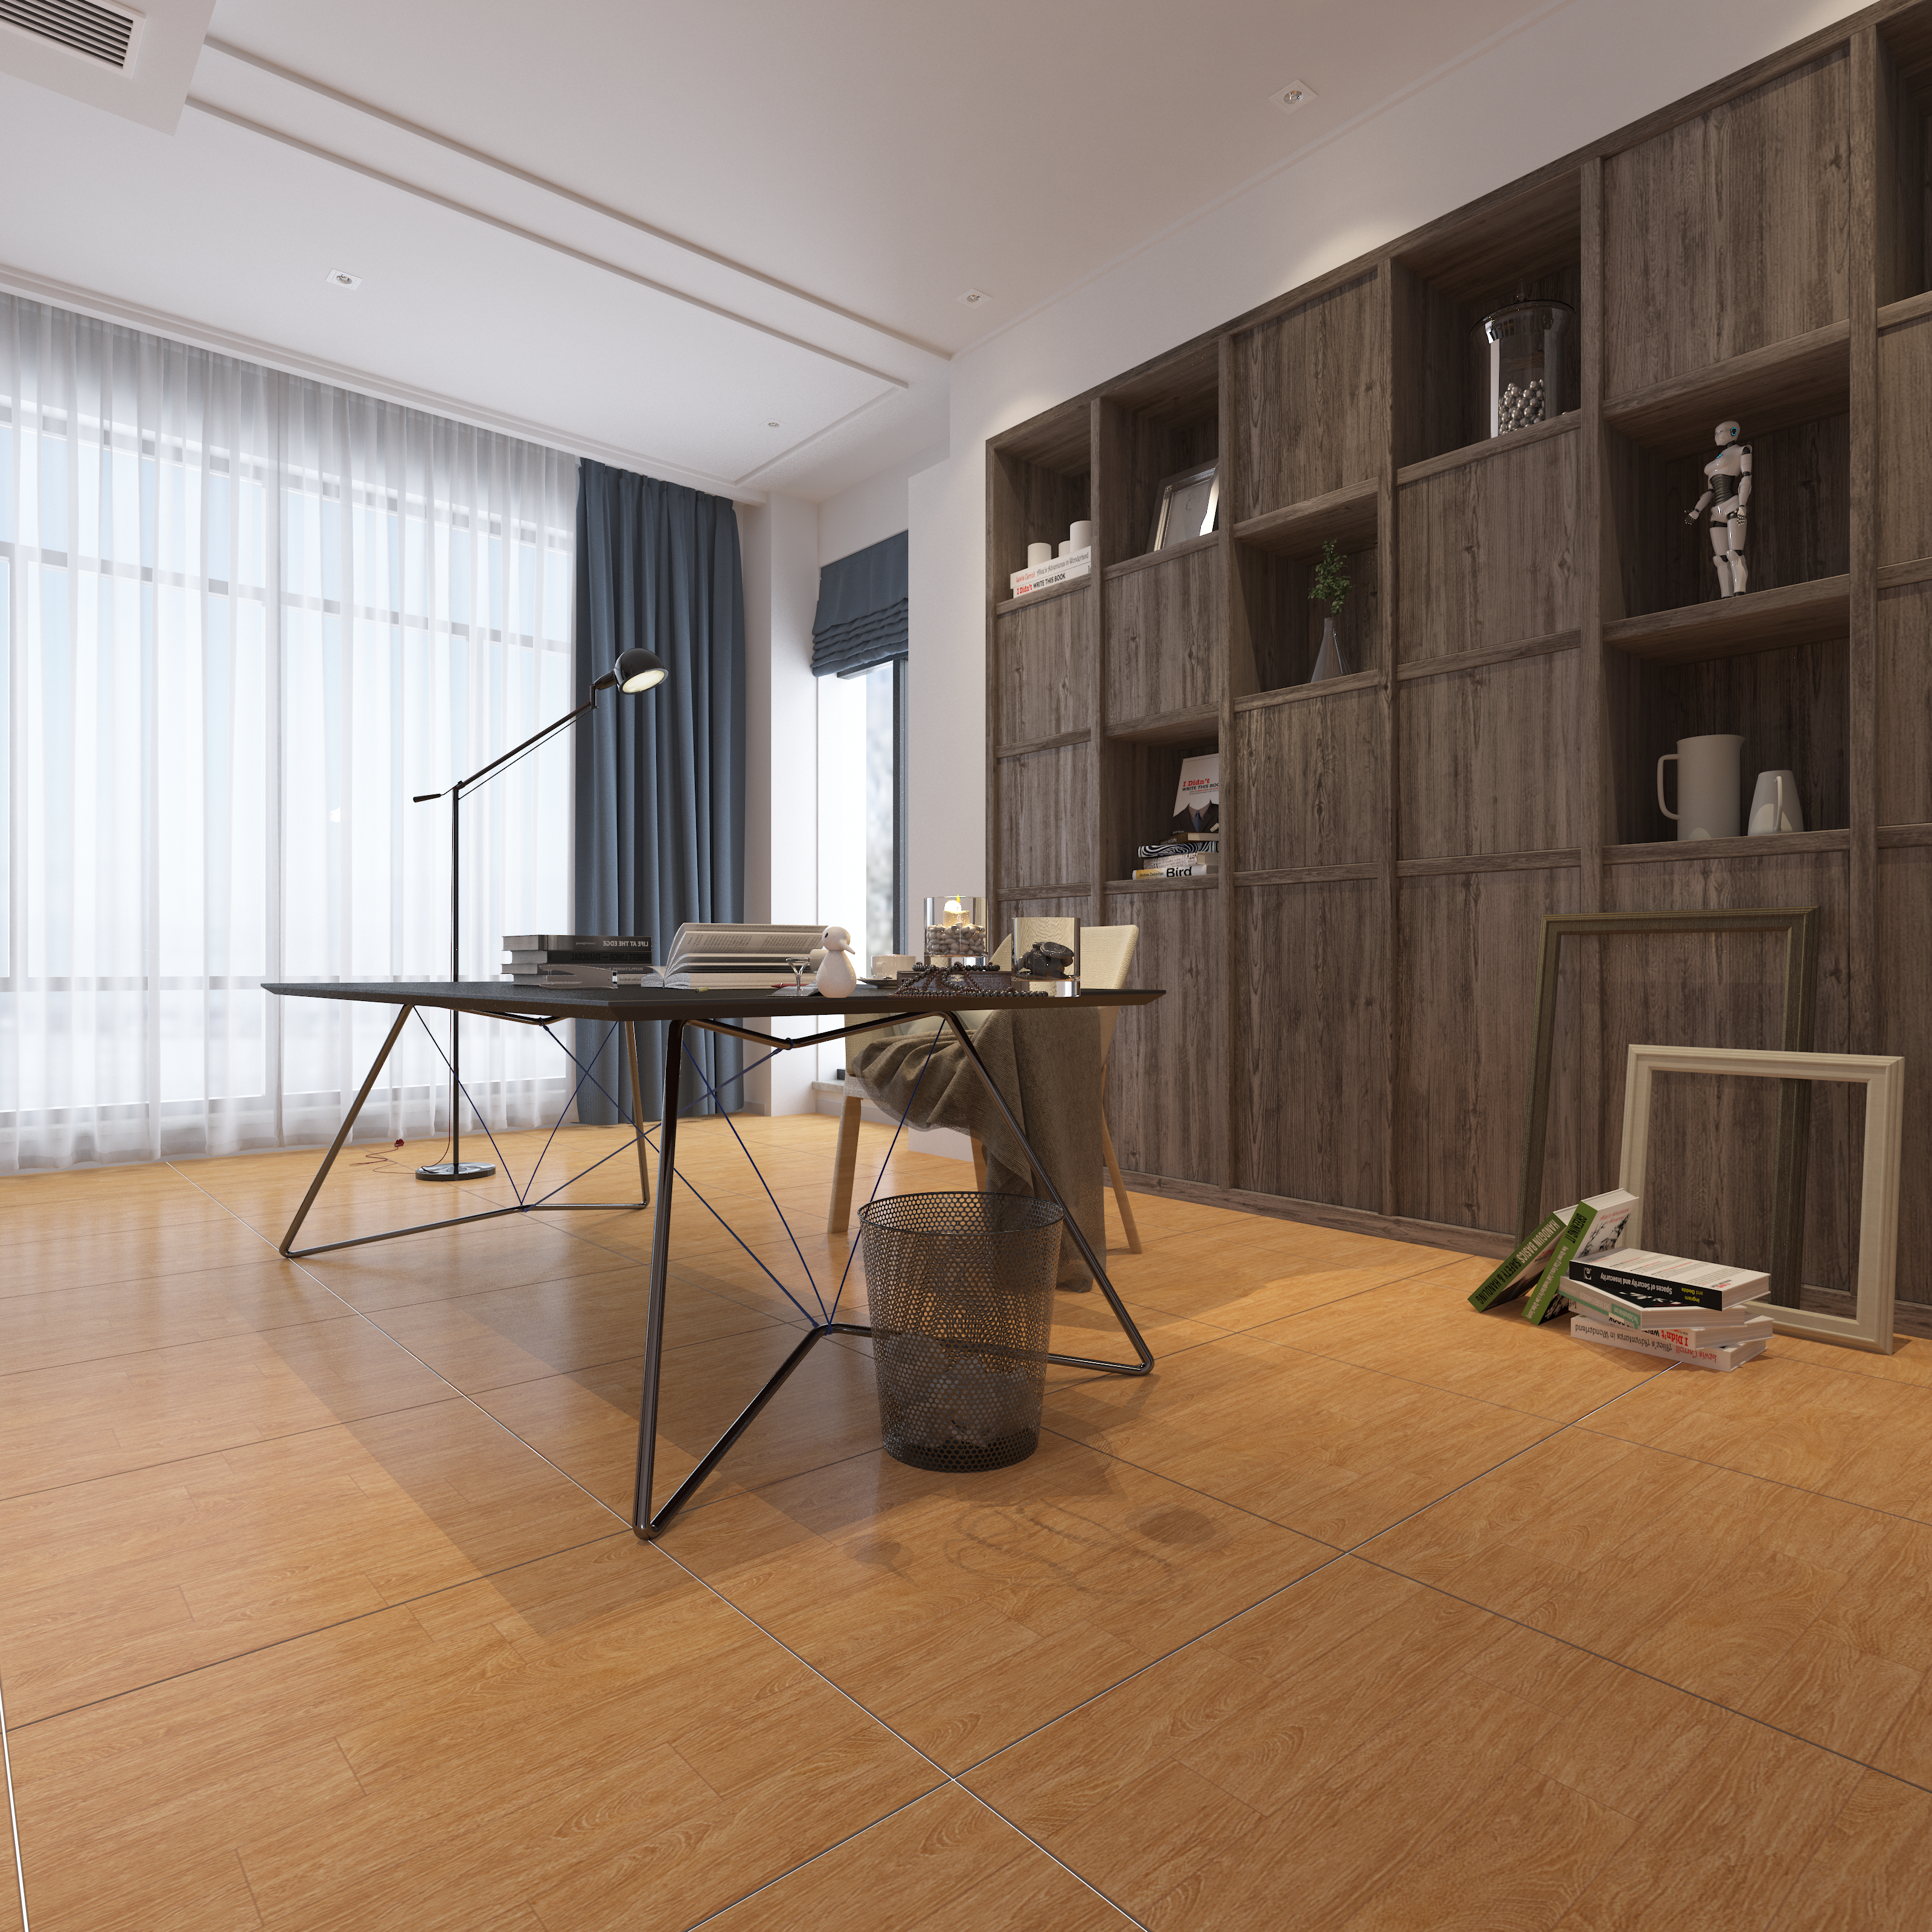 Thiết kế nội thất Đồ Án Kiến Trúc tại Hà Nội Thiết kế các phối cảnh sử dụng gạch vân gỗ Catalan cho bài viết GẠCH VÂN GỖ – NÉT ĐẸP VƯỢT THỜI GIAN 1637199274 1